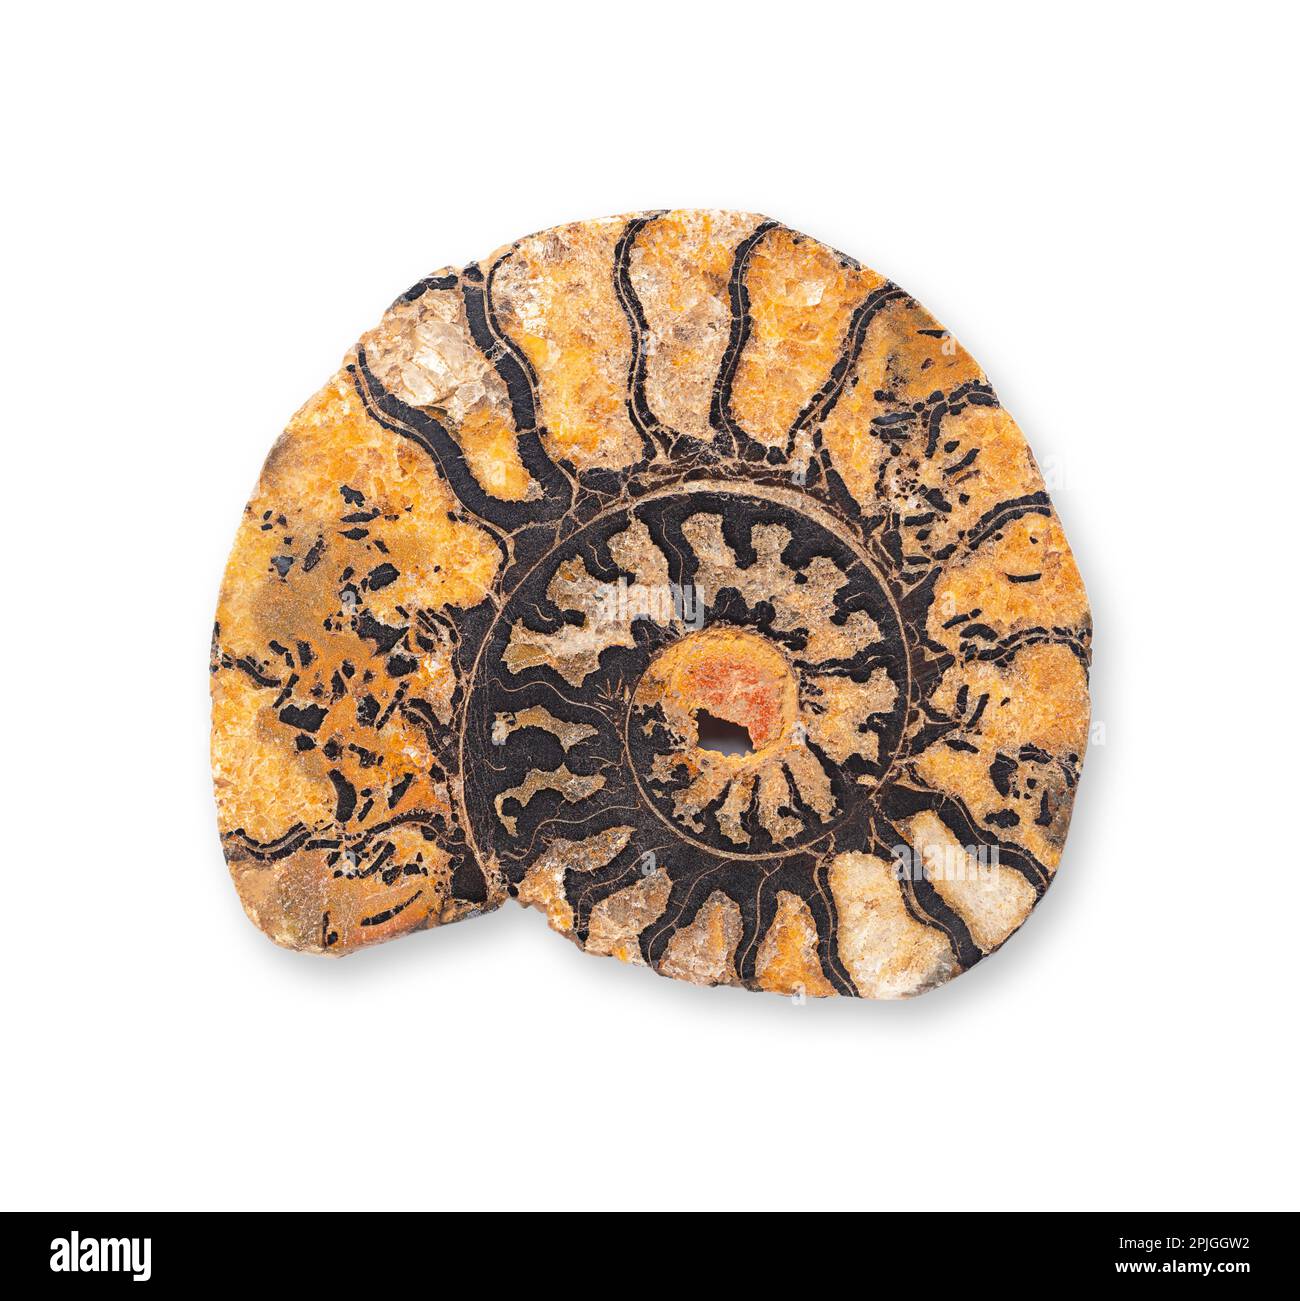 Ammonit-Längsschnitt. Sagittaler Schnitt durch eine spiralförmige Fossilienschale eines ausgestorbenen Meeres-Weichtieres, der die inneren Kammern offenbart. Stockfoto